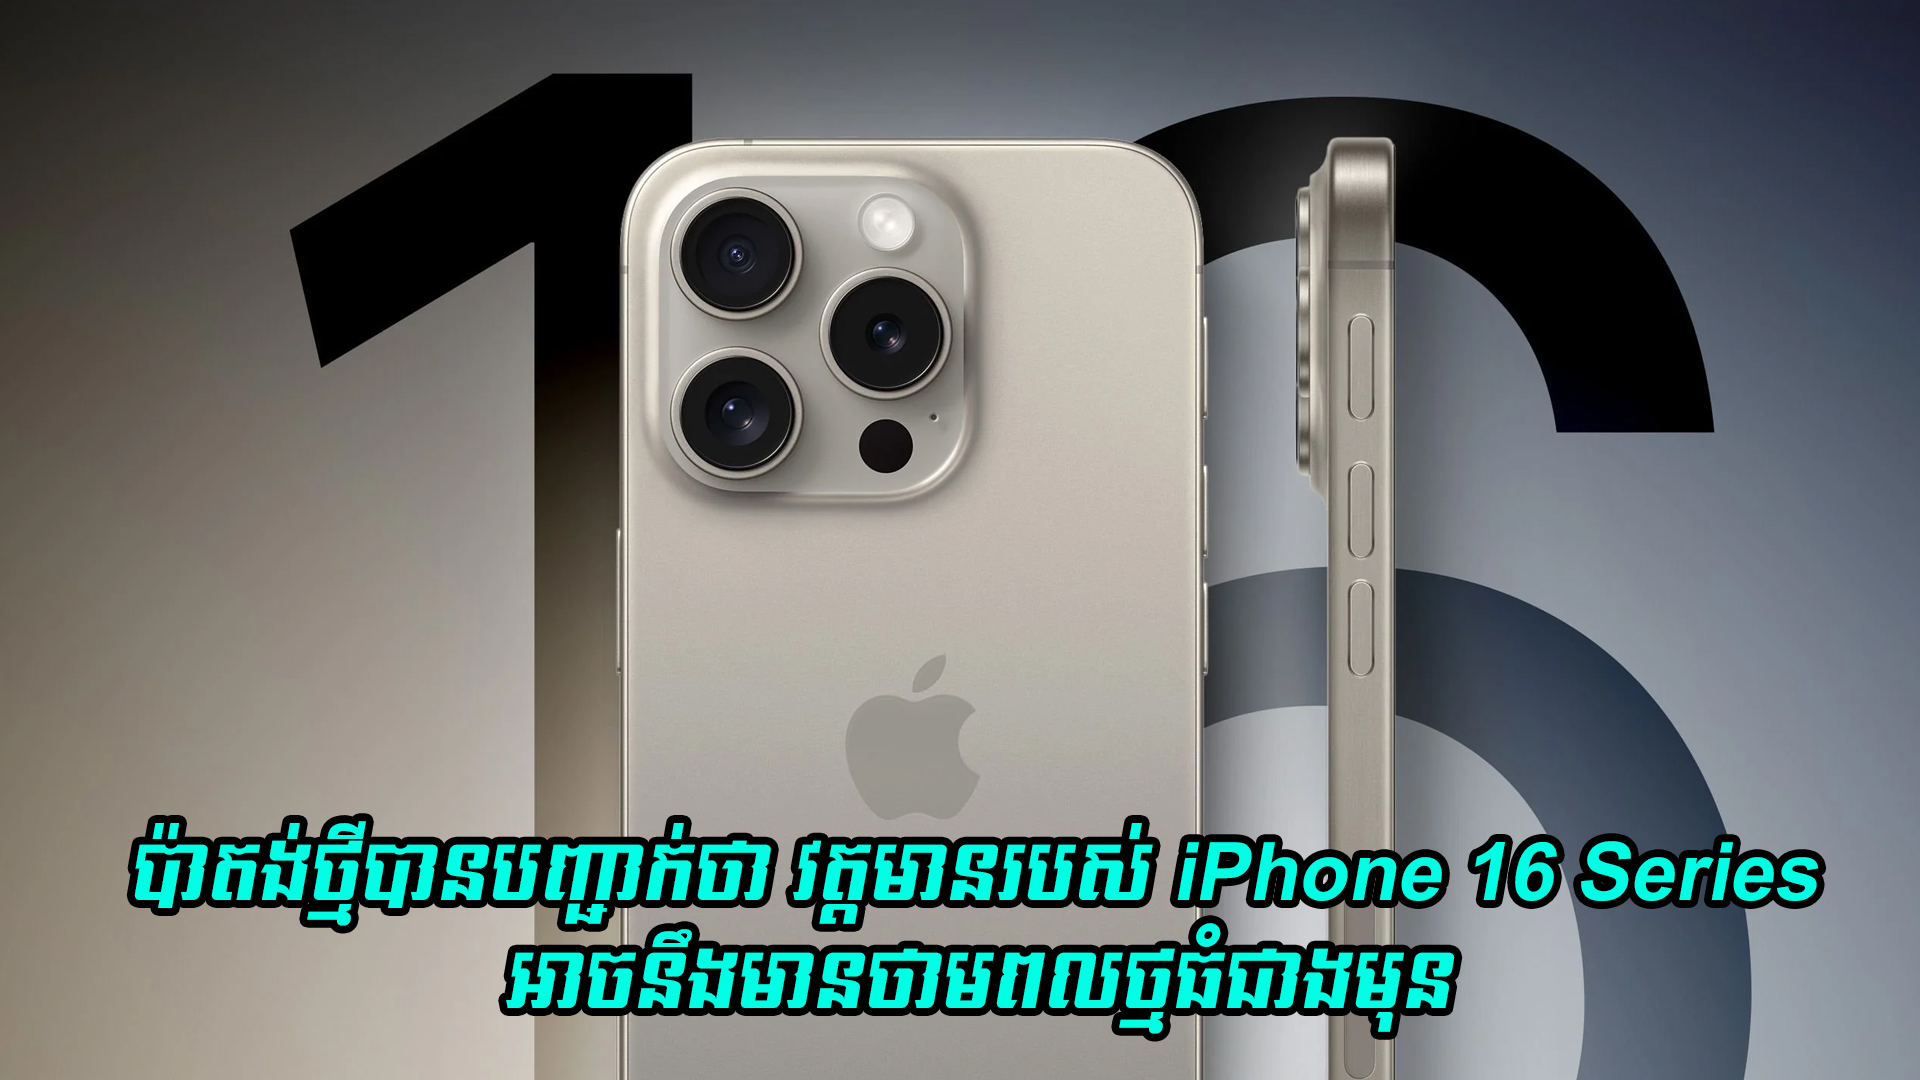 ប៉ាតង់ថ្មីរបស់ Apple បញ្ជាក់ថា វត្តមានរបស់ iPhone 16 series អាចនឹងមានថាមពលថ្មធំជាងមុន